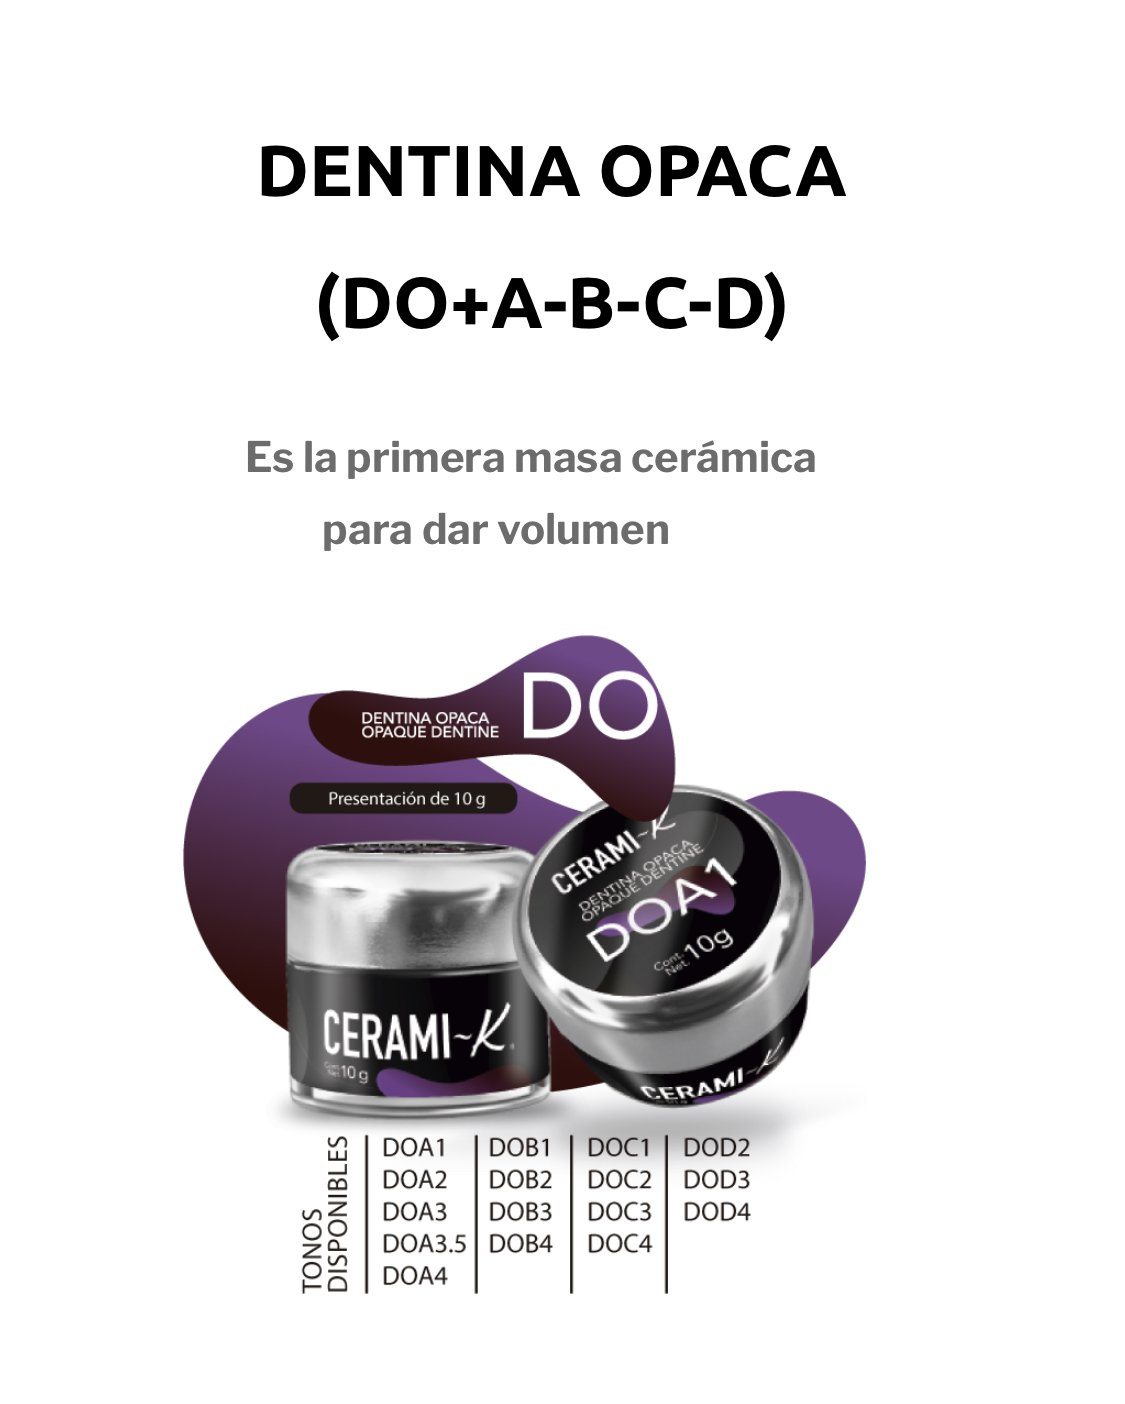 Ceramik - DO - masa de color - Dentina opaca tarro 10gr. CLEMDE Dental 